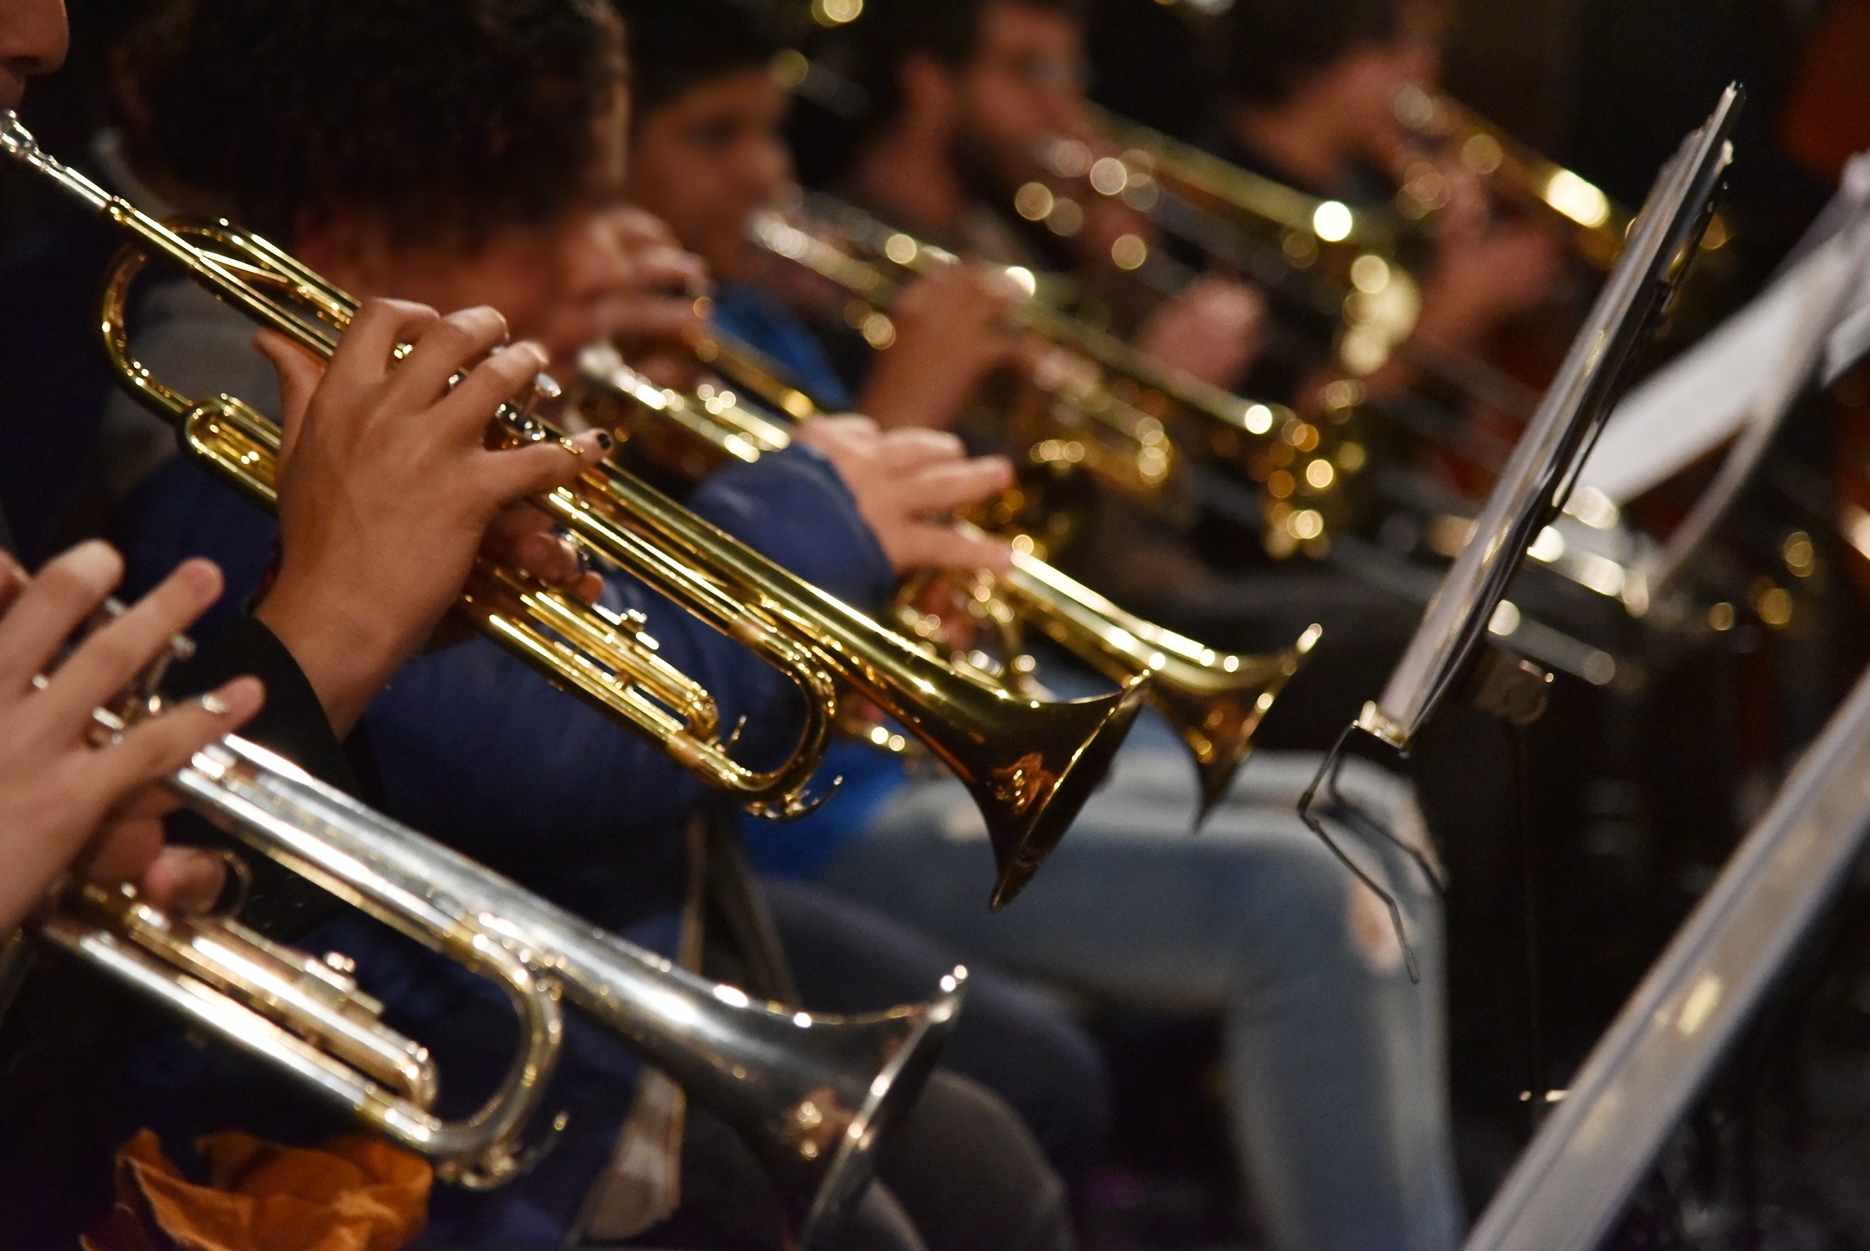 Rolando Goldman, coordinador de las Orquestas Infantiles y Juveniles: "En la música en general, y en las orquestas en particular, se comparte, no se compite"